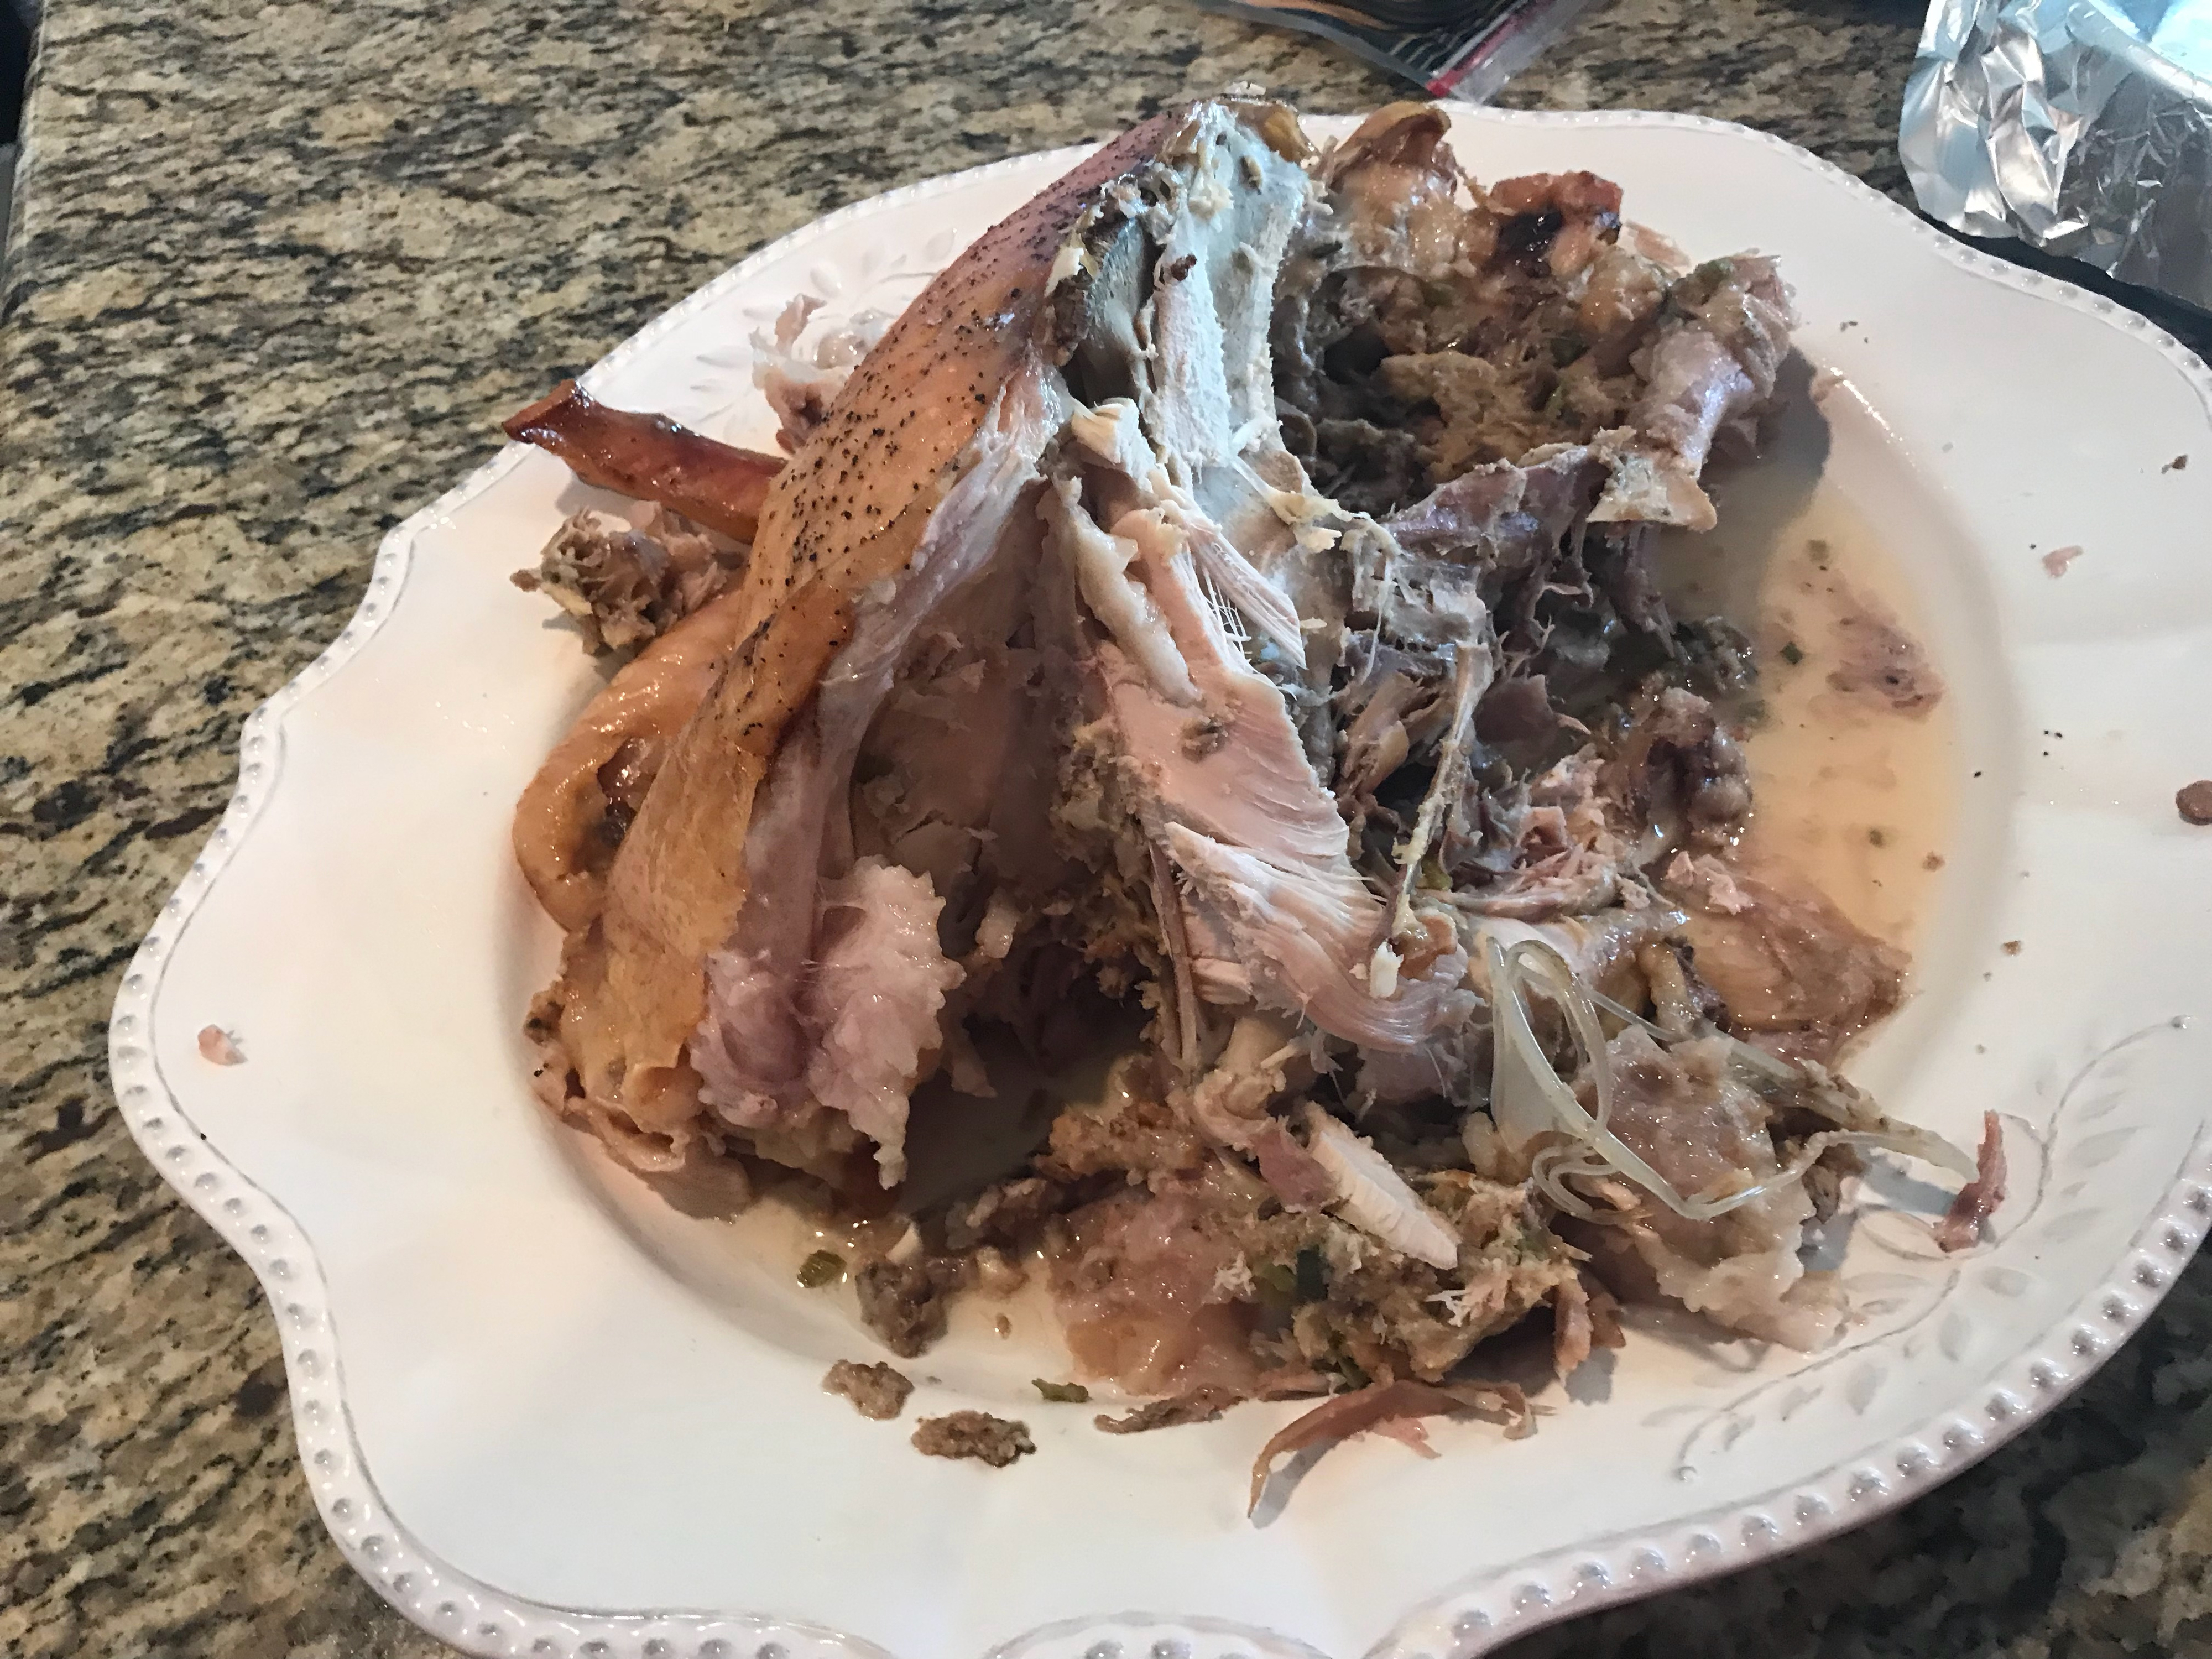 Turkey carcass on a platter